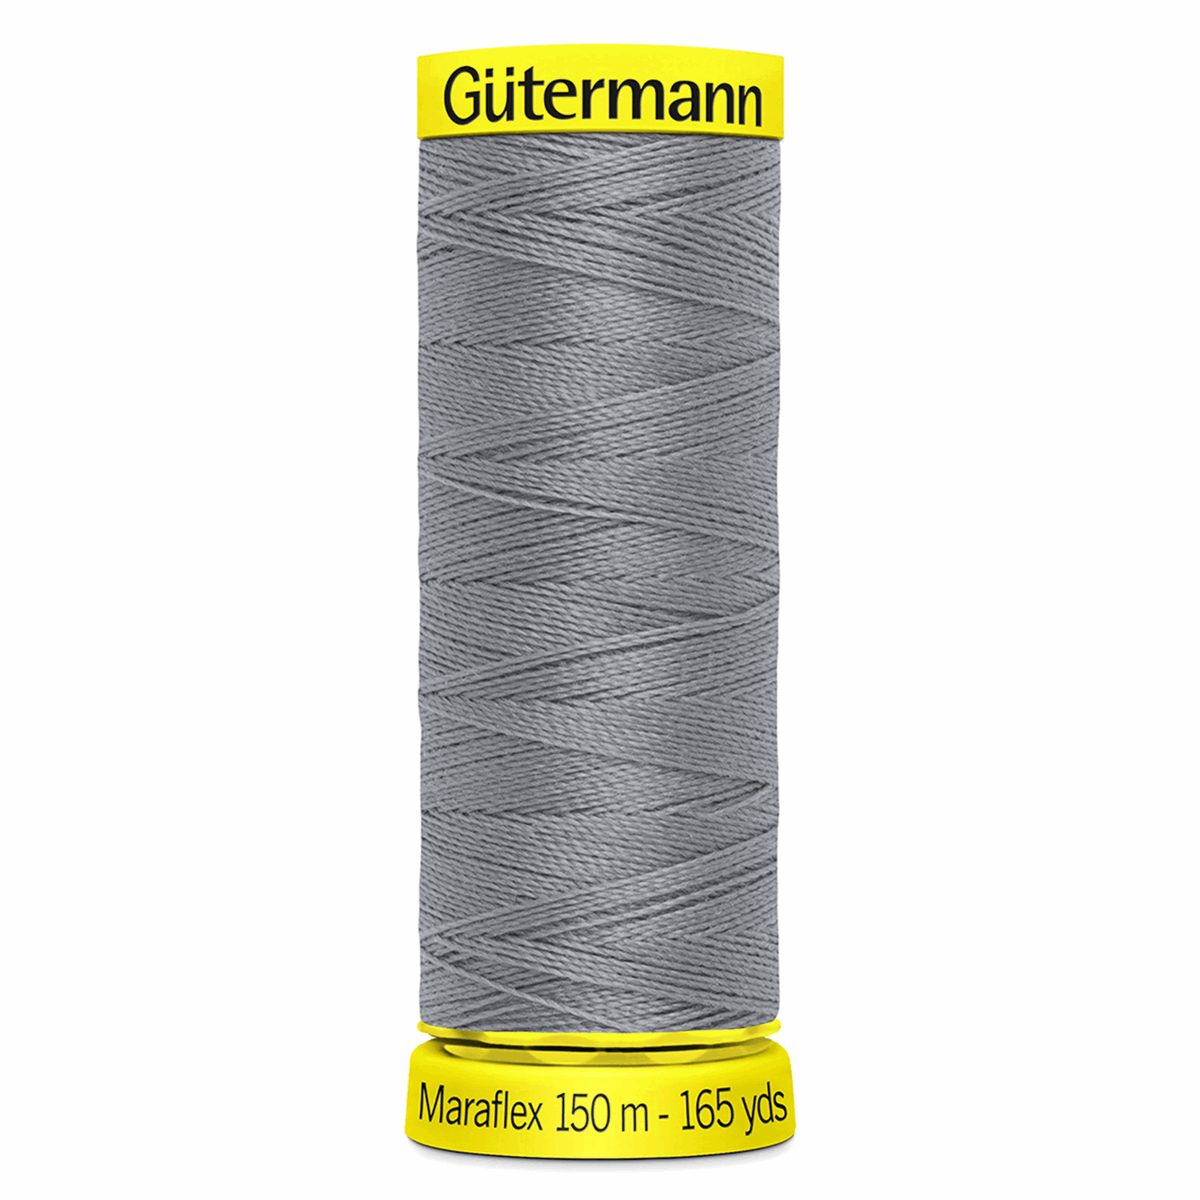 Gutermann Maraflex Elastic Sewing Thread 150m Silver Grey 40